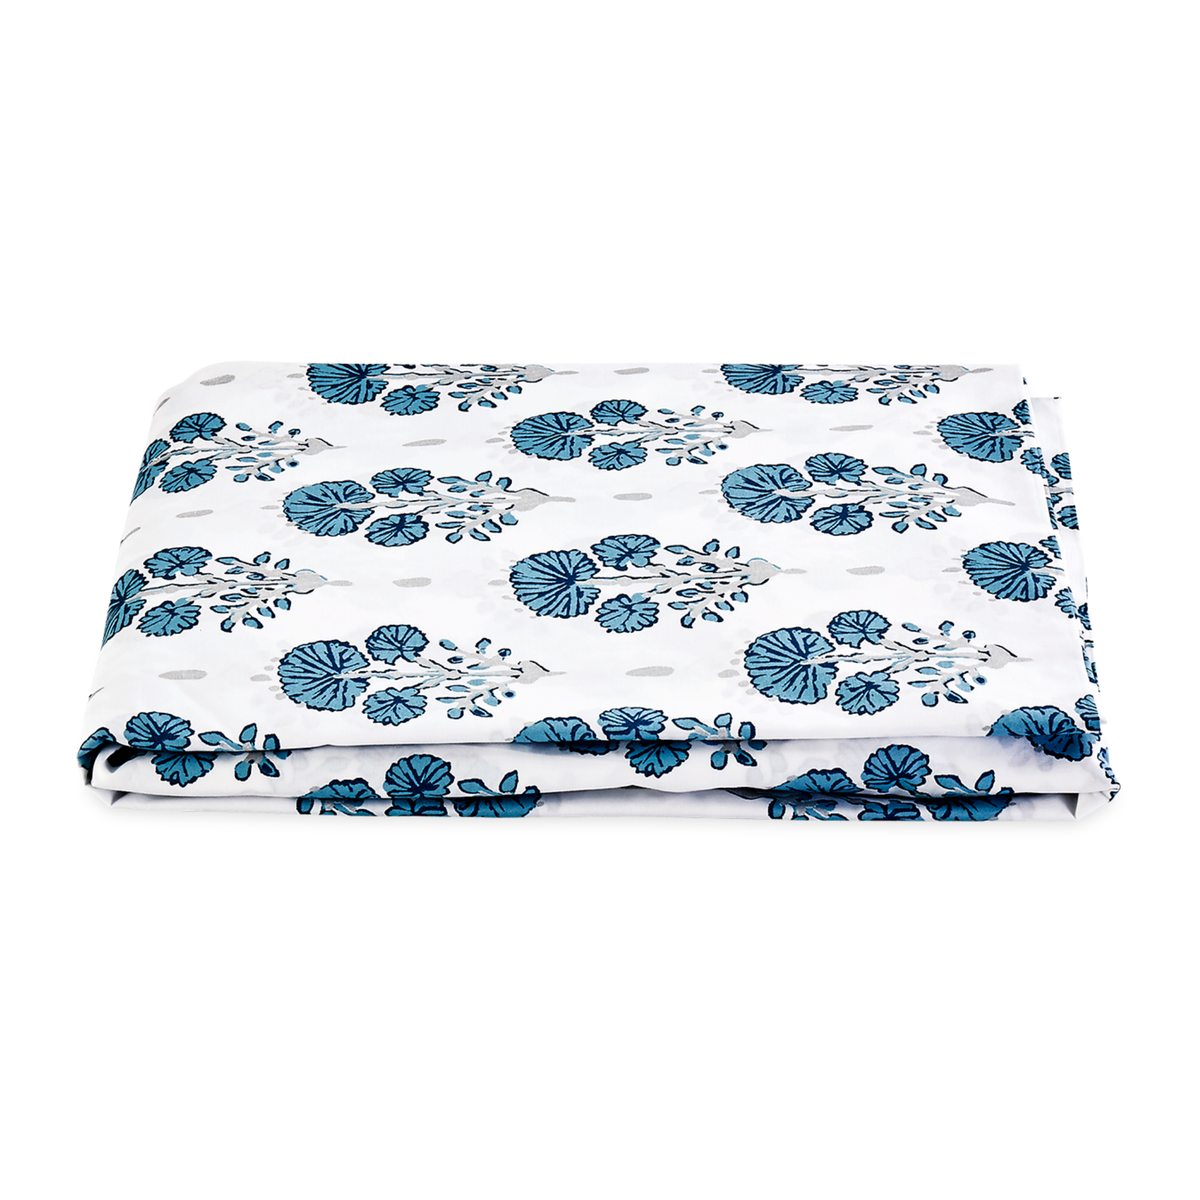 Folded Fitted Sheet of Lulu DK Matouk Joplin Bedding in Mineral Blue Color